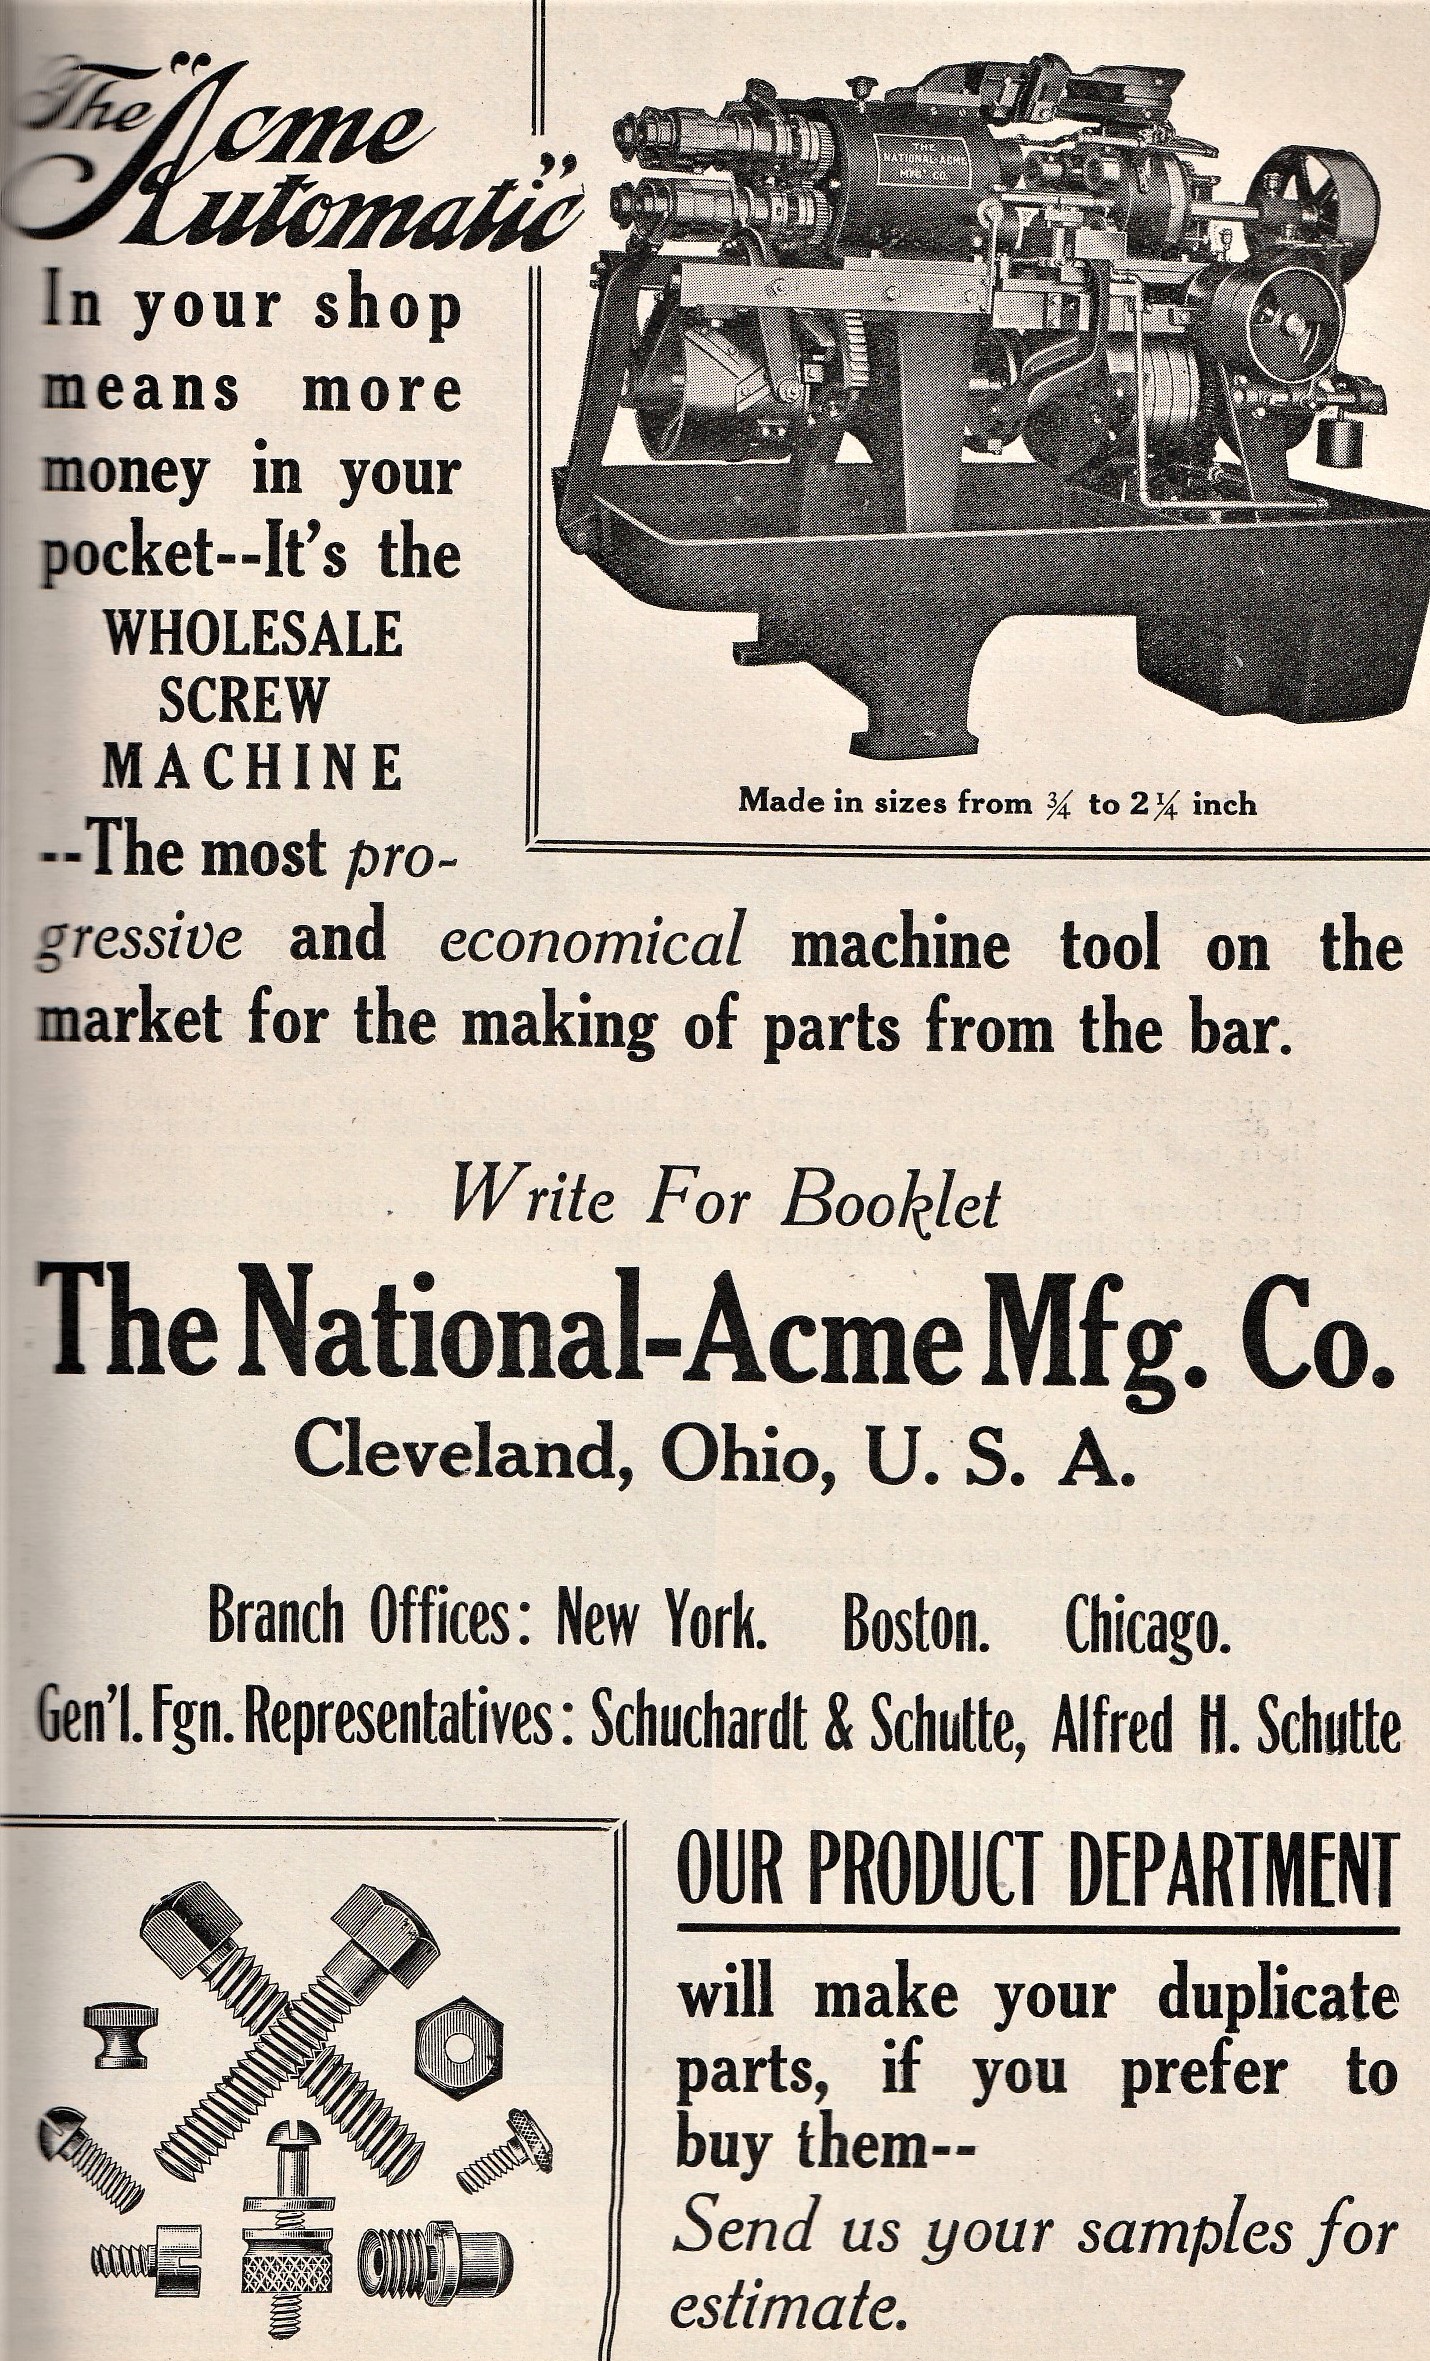 Vintage Shop Equipment: Wholesale Screw Machine | THE SHOP